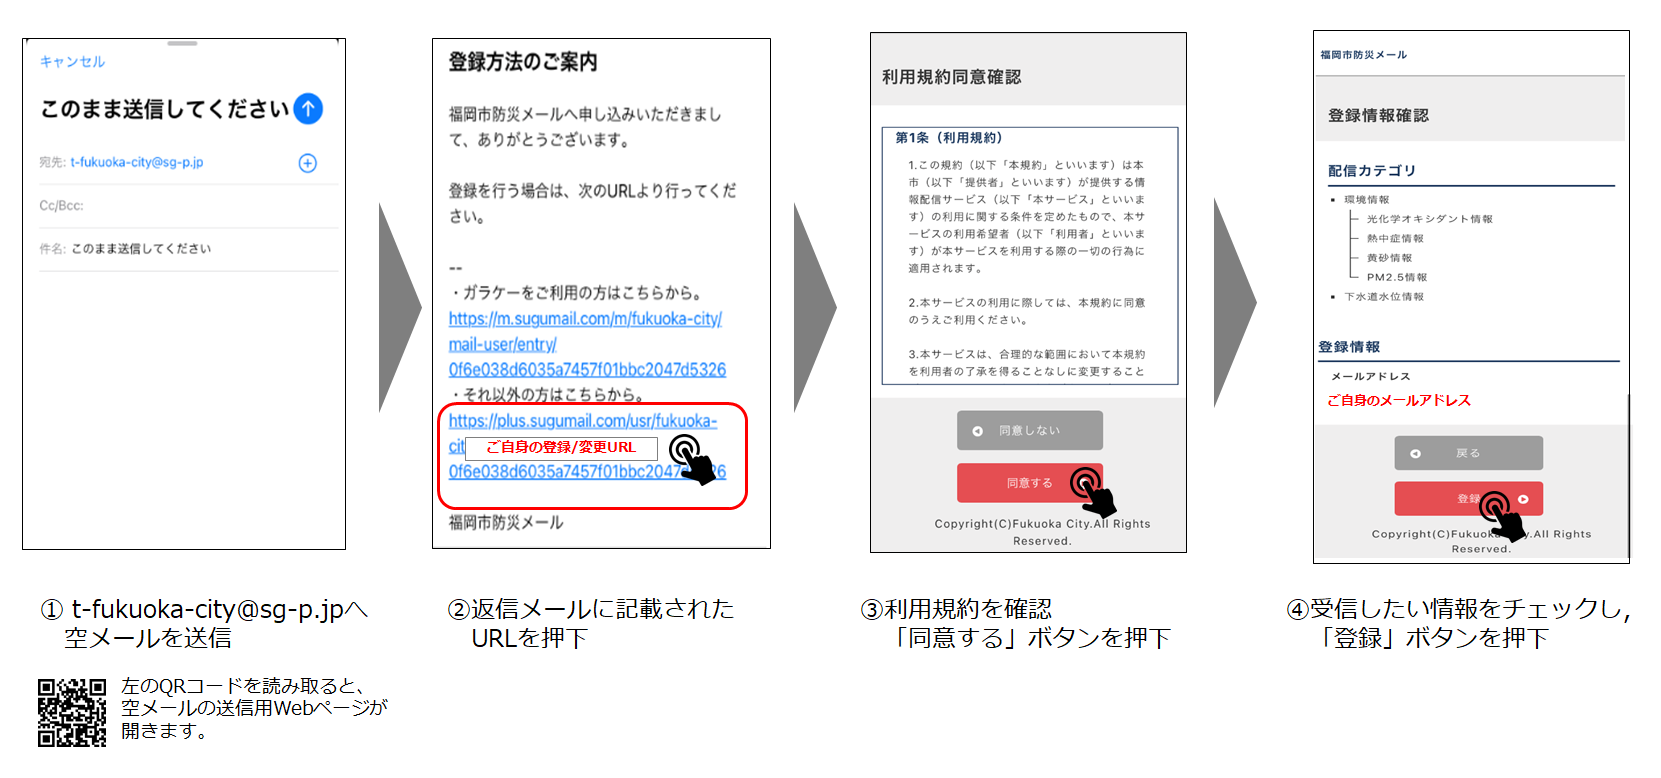 防災メールの初回登録イメージ,1 t-fukuoka-city@sg-p.jpへ空メールを送信,2 返信メールに記載されたURLを押下,3 利用規約を確認。「同意するボタンを押下」,4 受診したい情報をチェックし、「登録」ボタンを押下